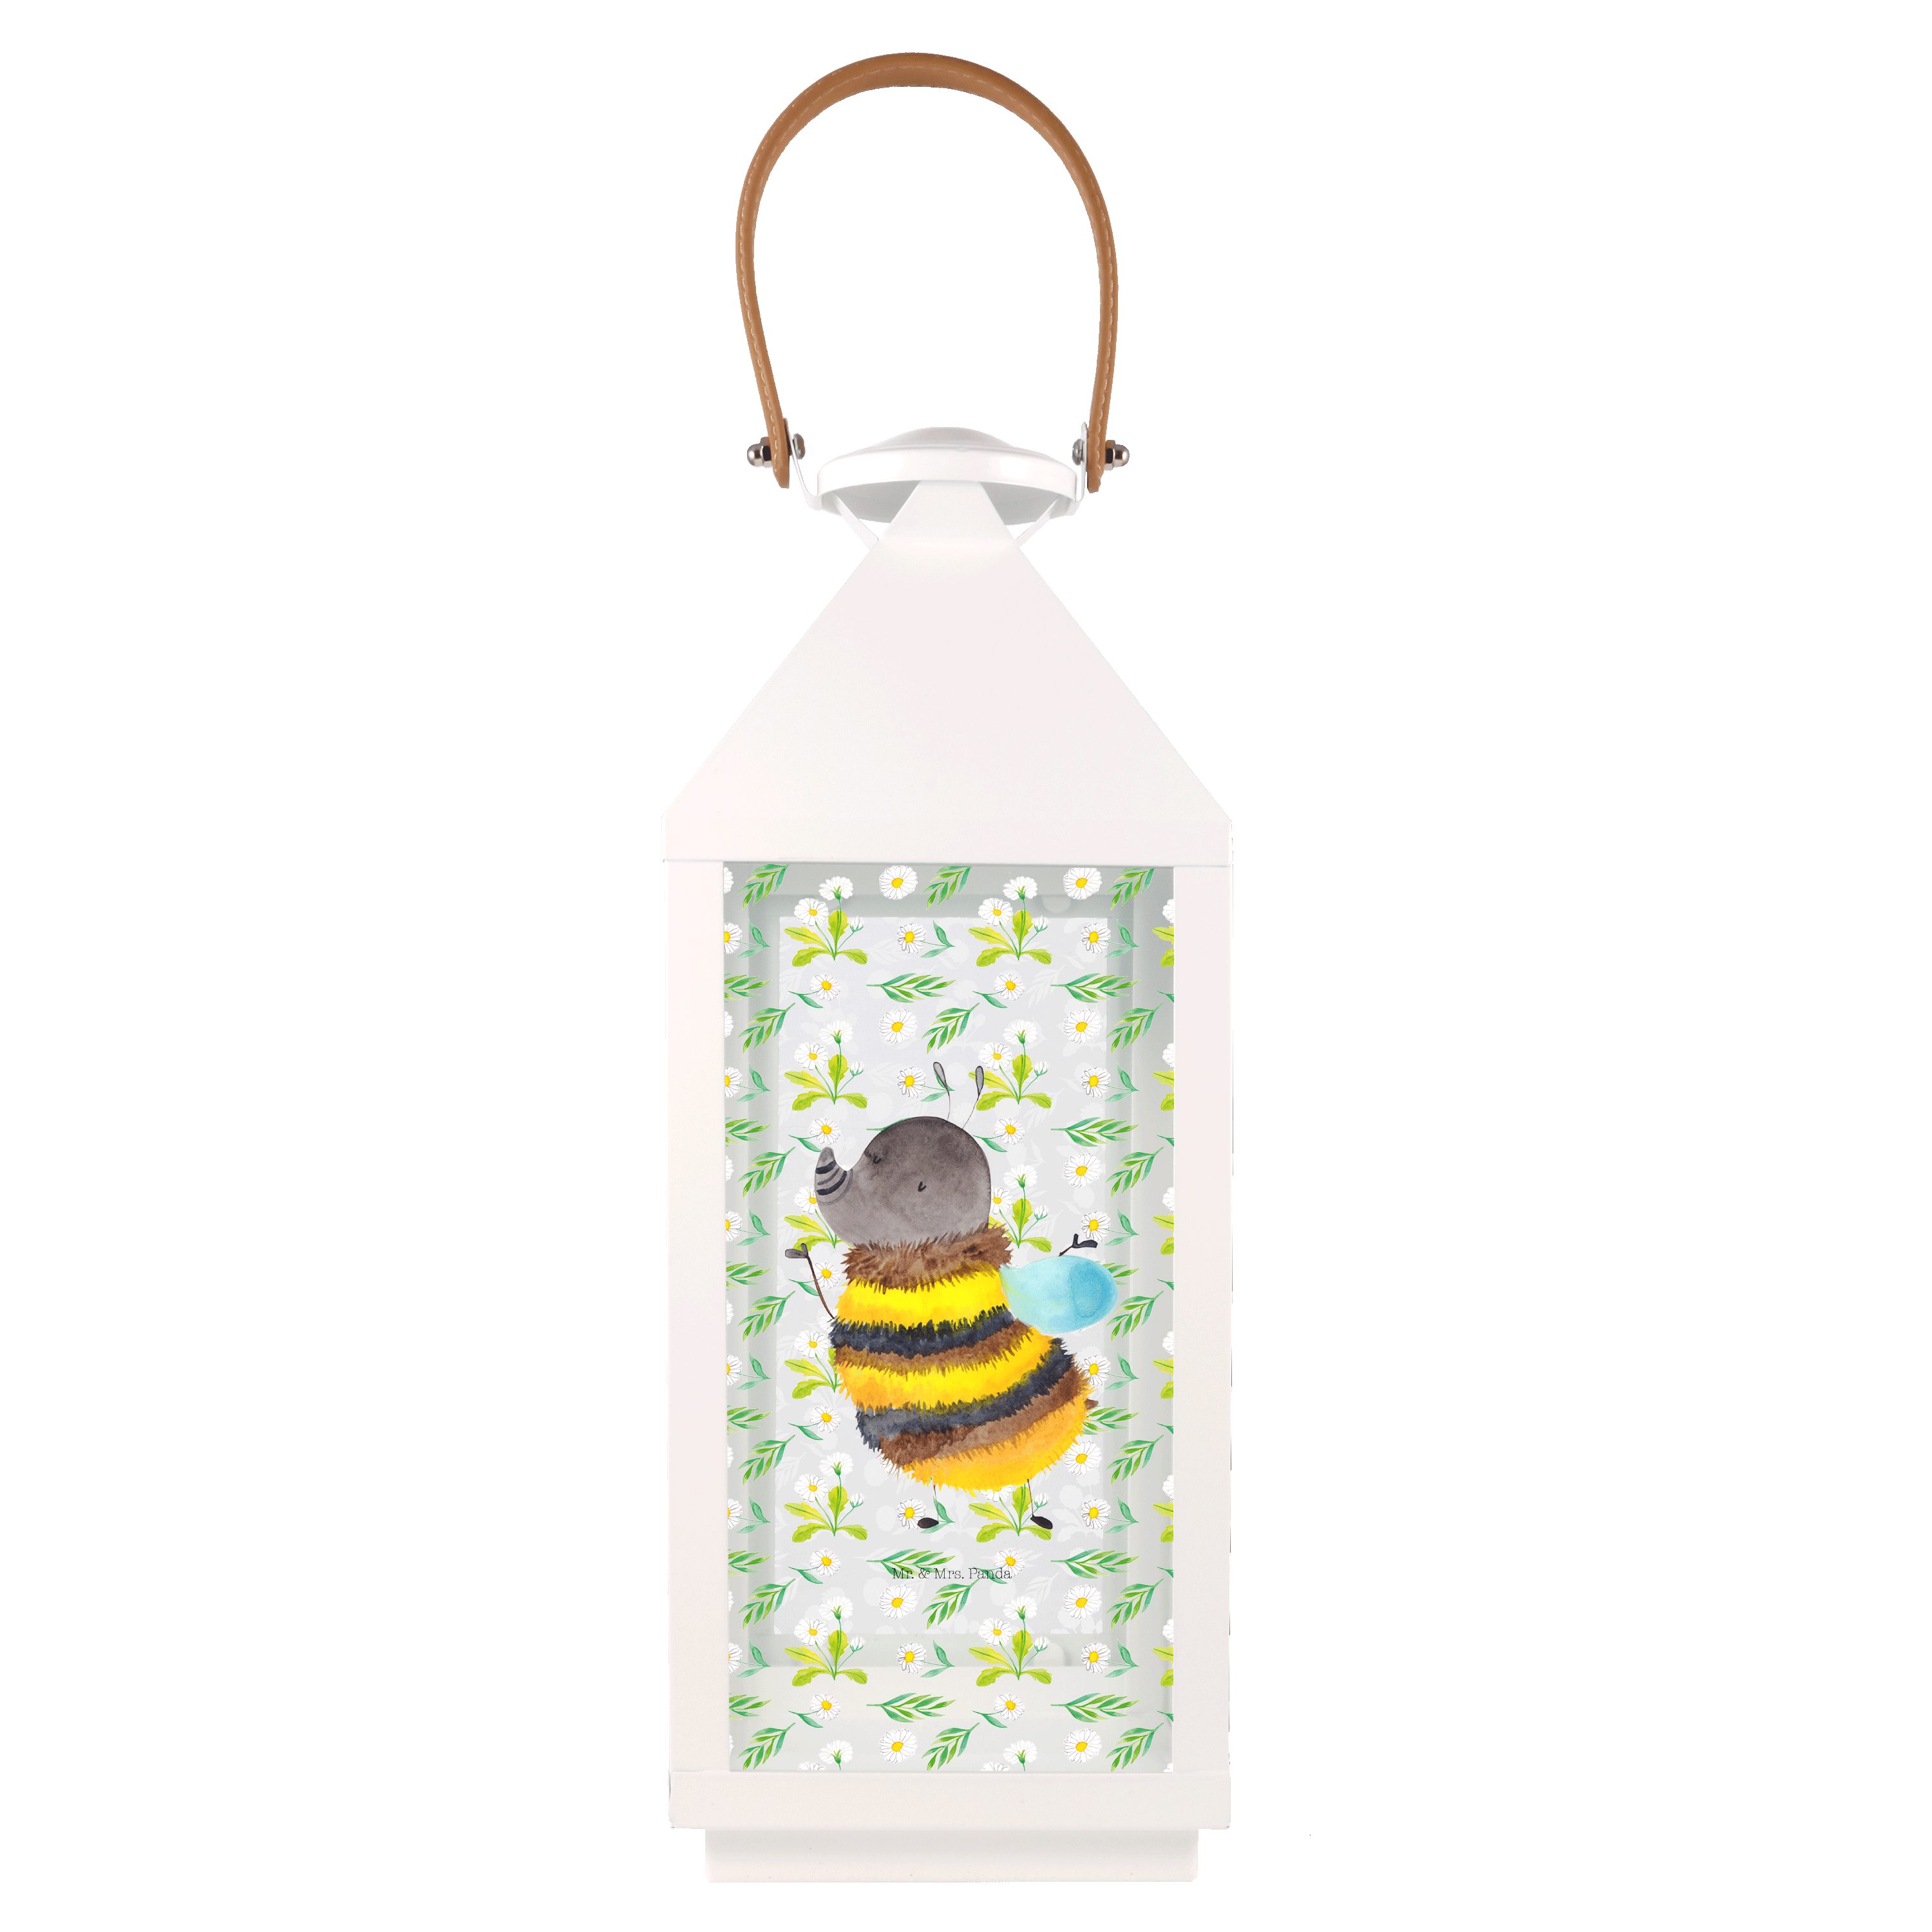 Mr. & Mrs. Panda Gartenleuchte L Hummel flauschig - Transparent - Geschenk, Biene, Laterne kleine L, Bedruckt mit Motiven